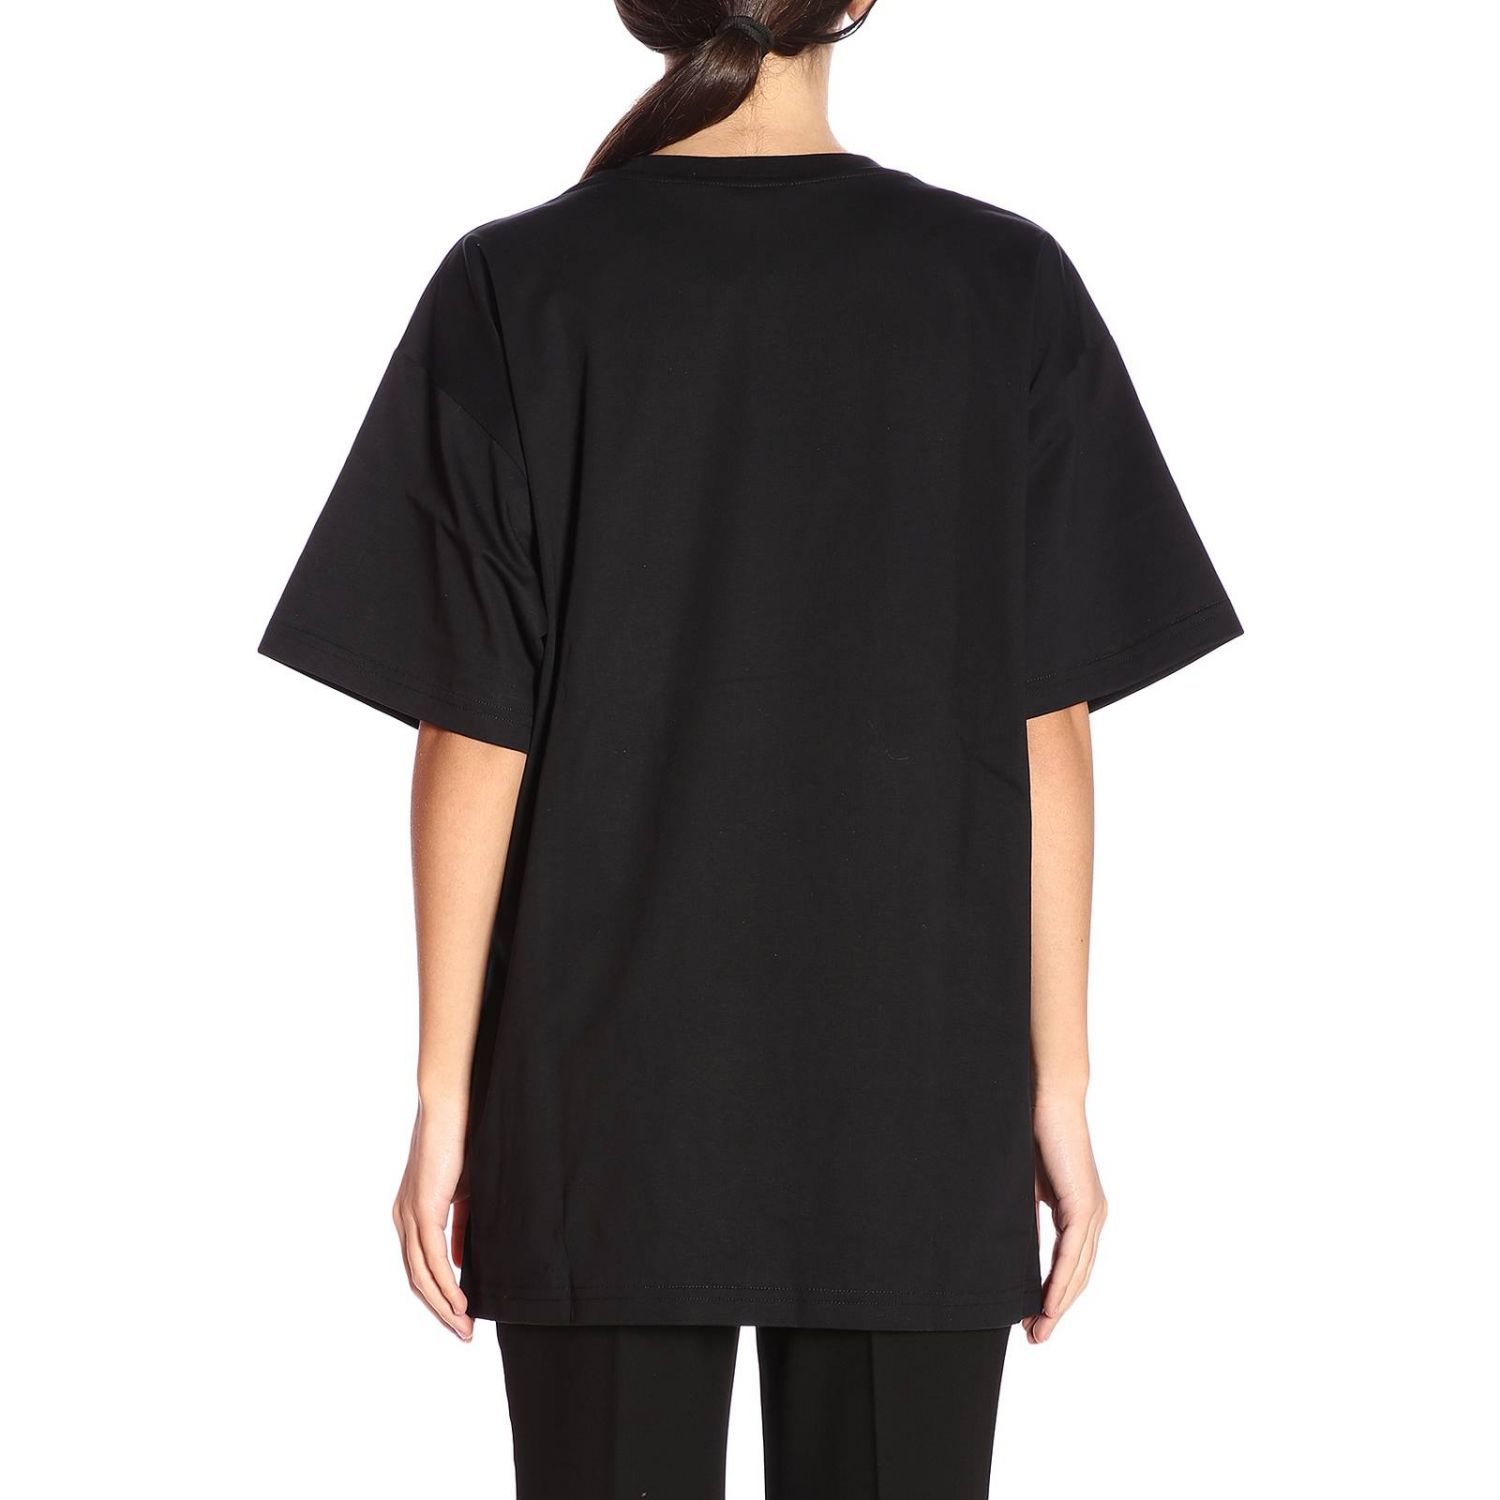 Moschino Outlet: T-shirt women | T-Shirt Moschino Women Black | T-Shirt ...